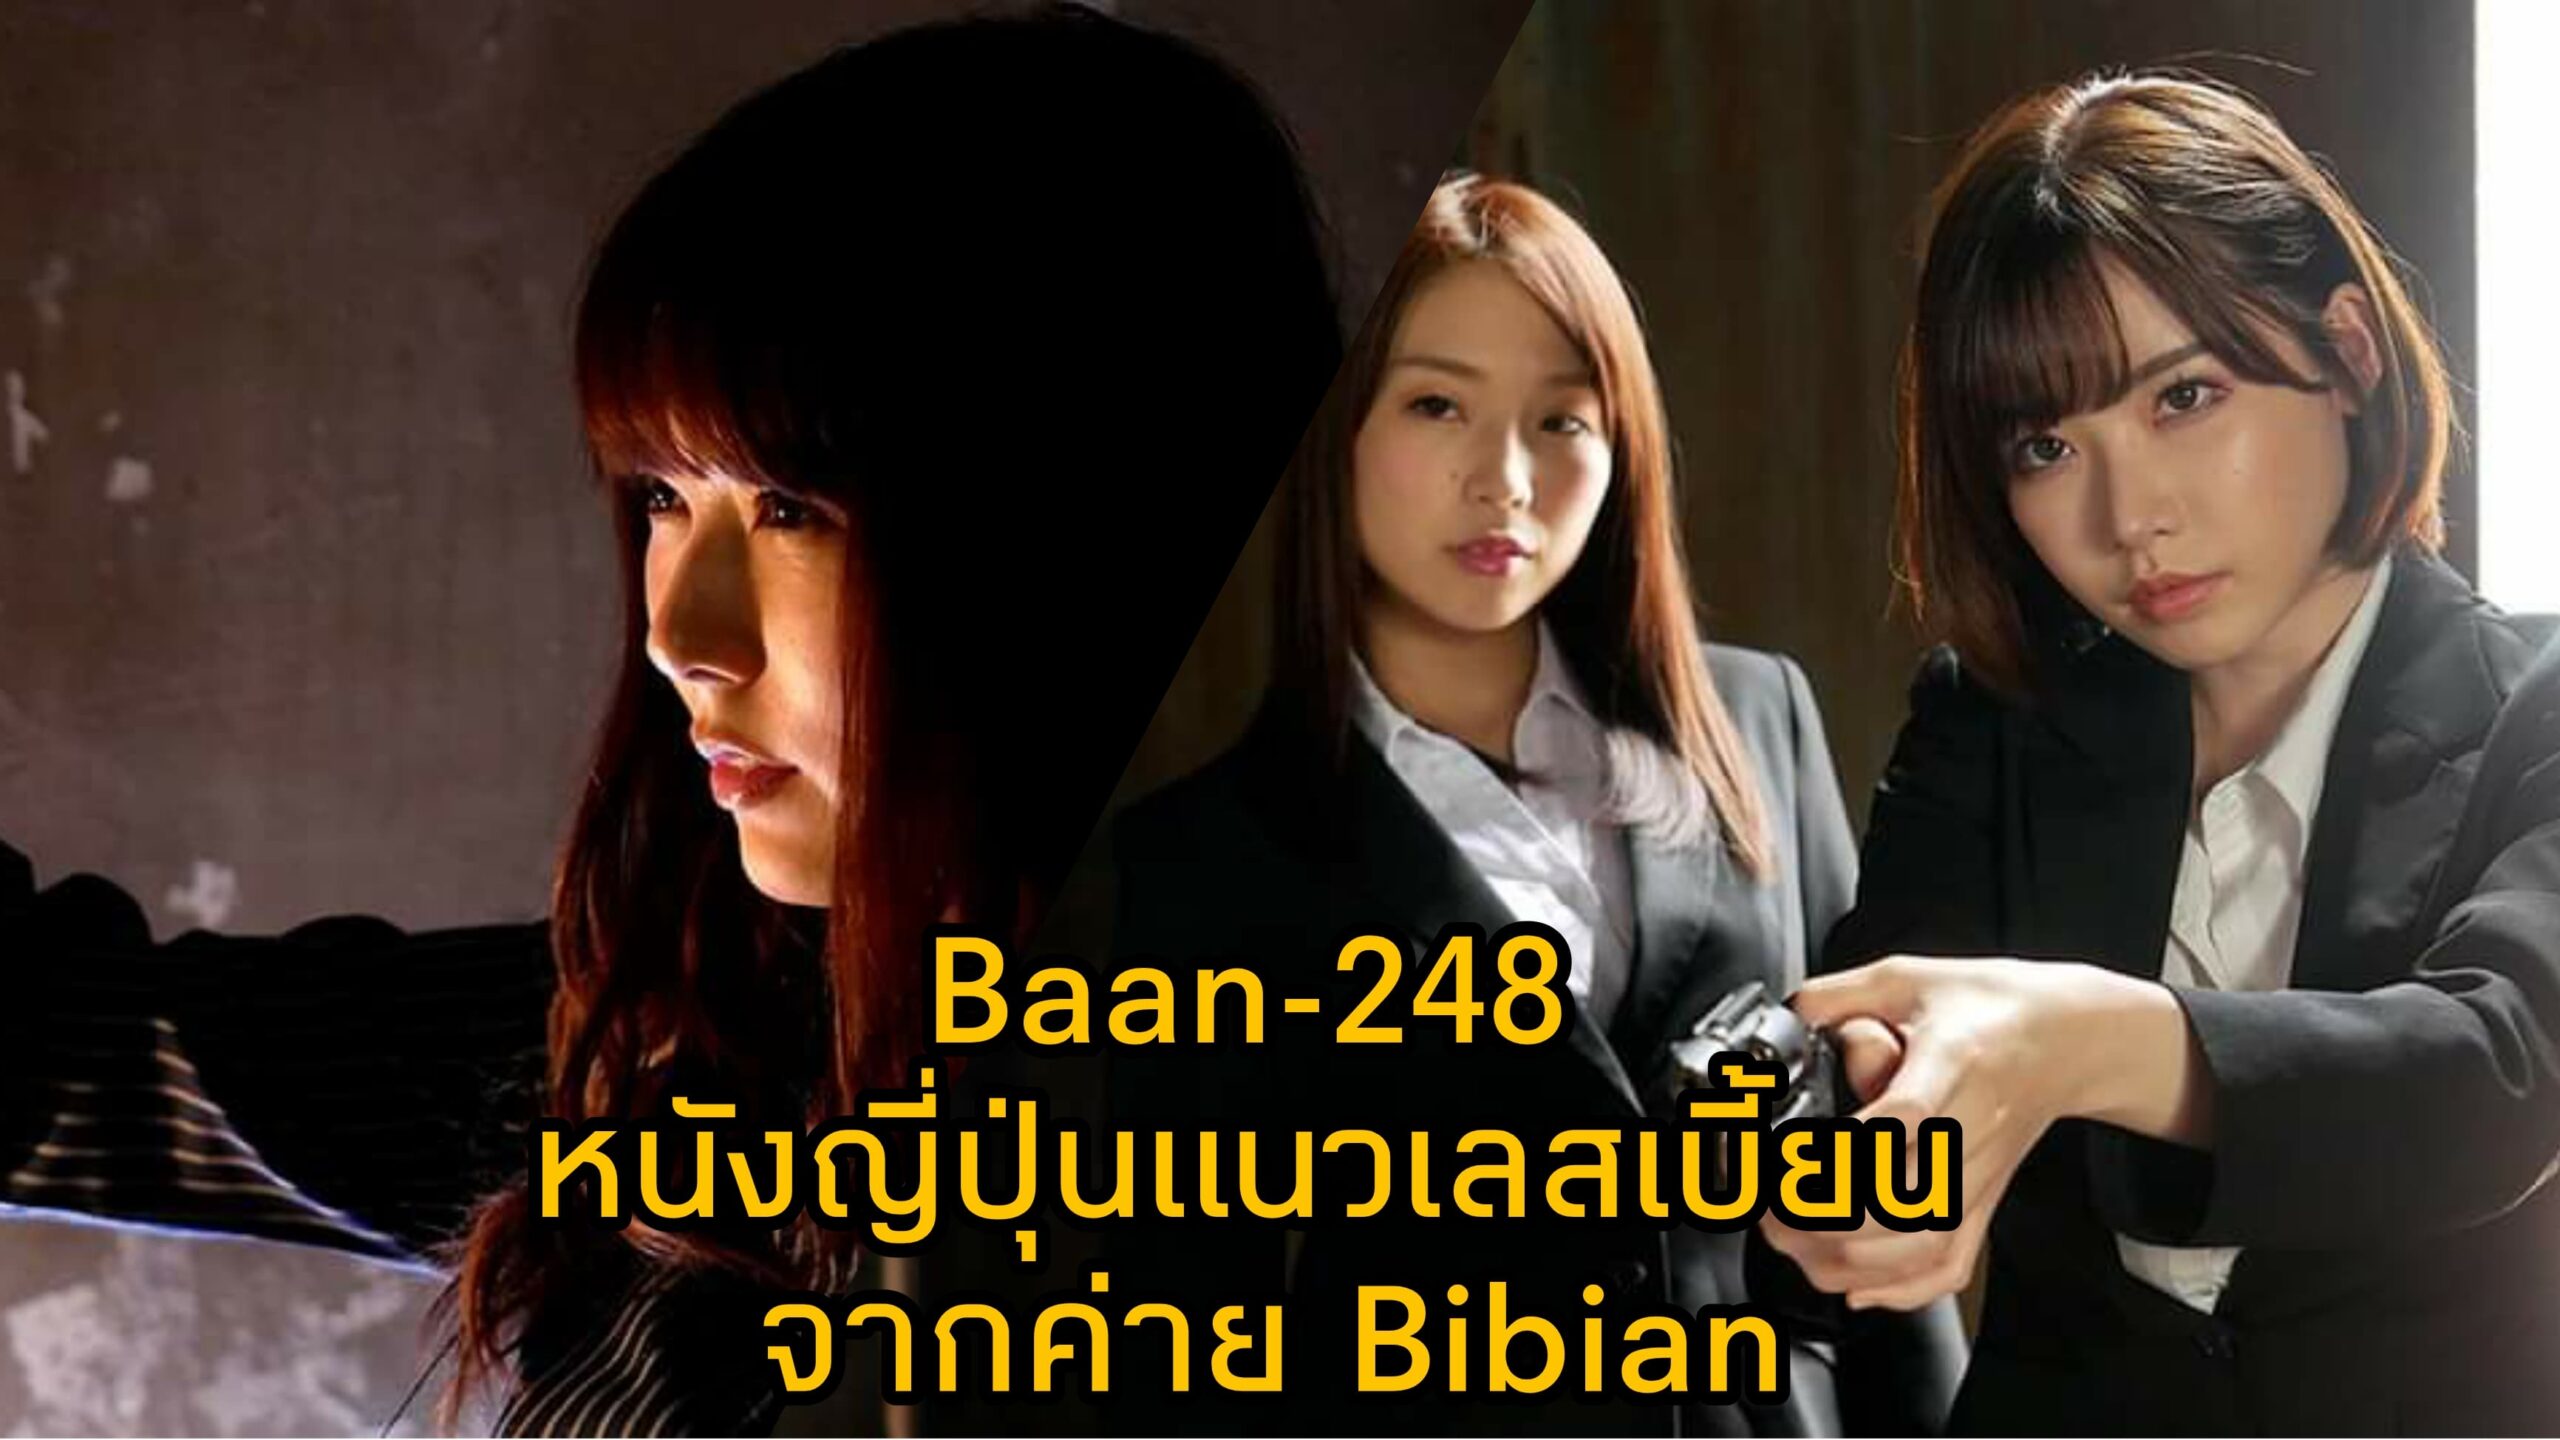 Bann-248 หนัง JAV แนวเลสเบี้ยน นำแสดงโดย 3 ตัวแม่แห่งวงการเอวี Eimi Fukada 2